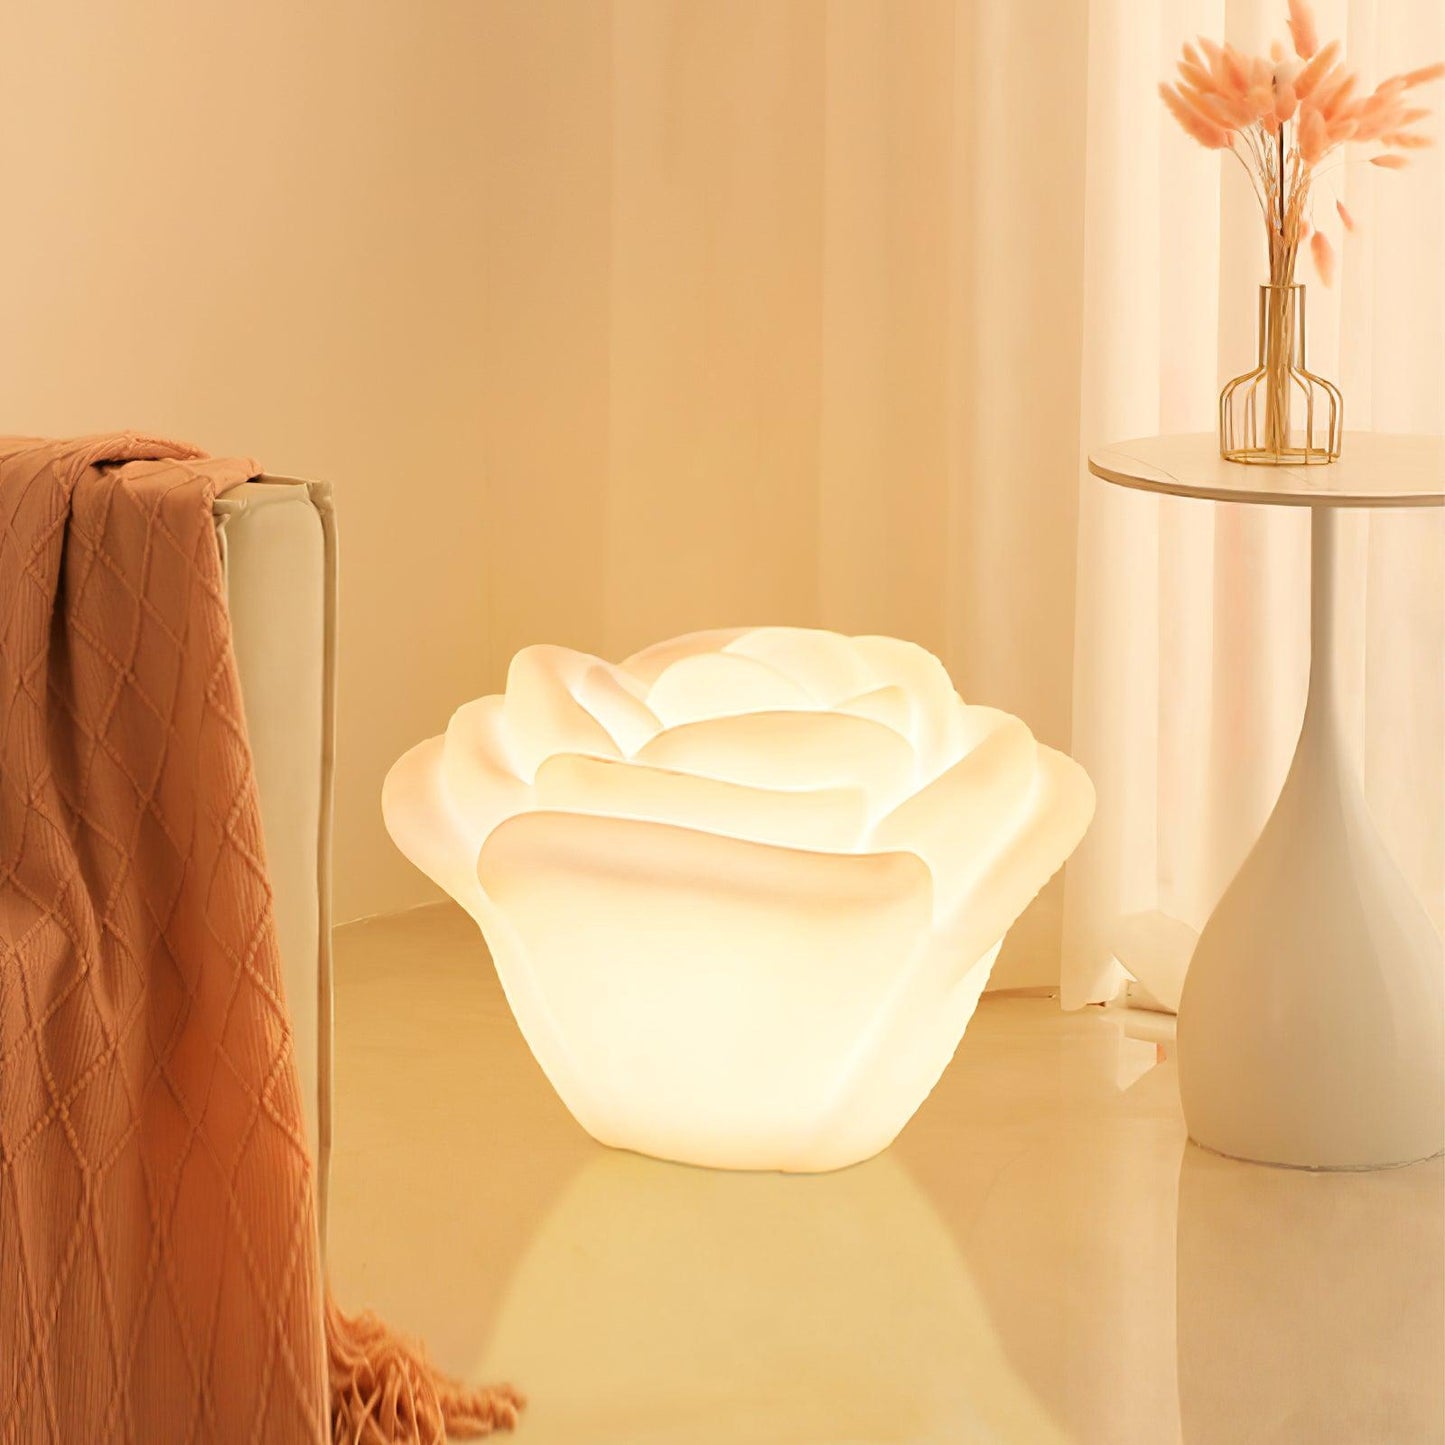 مصباح طاولة LED على شكل وردة بيضاء